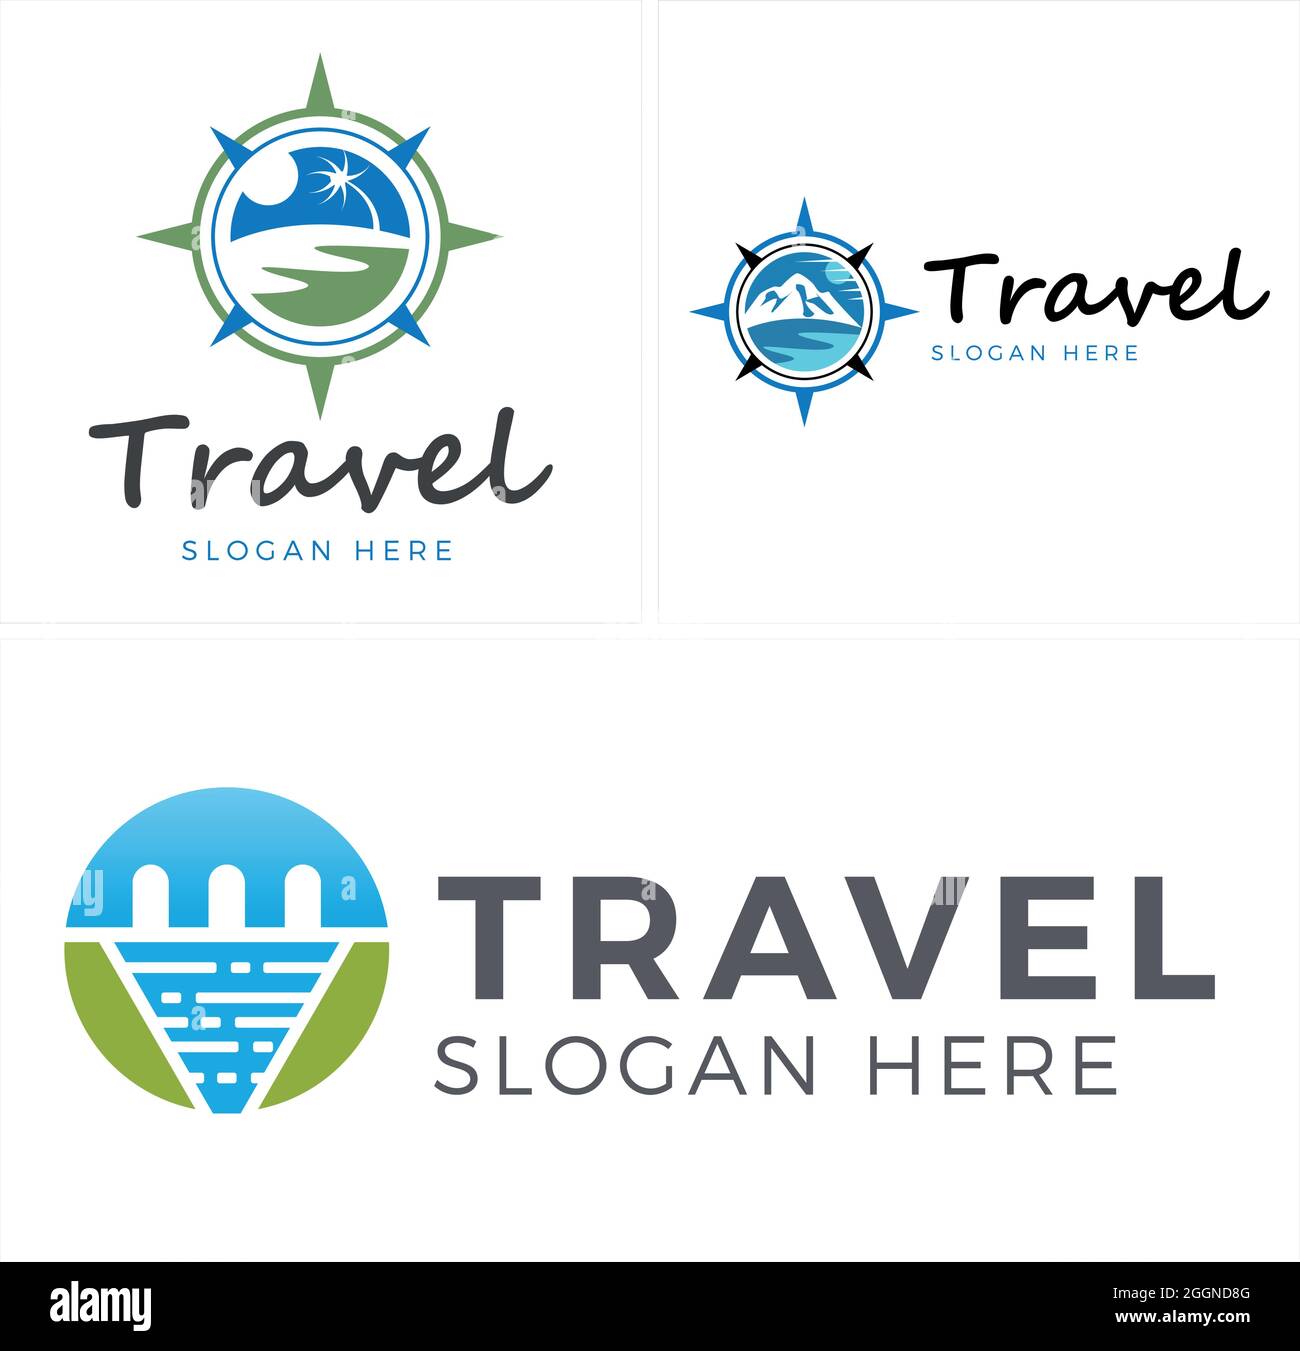 Travel adventure sea mountain holiday logo design Stock Vector